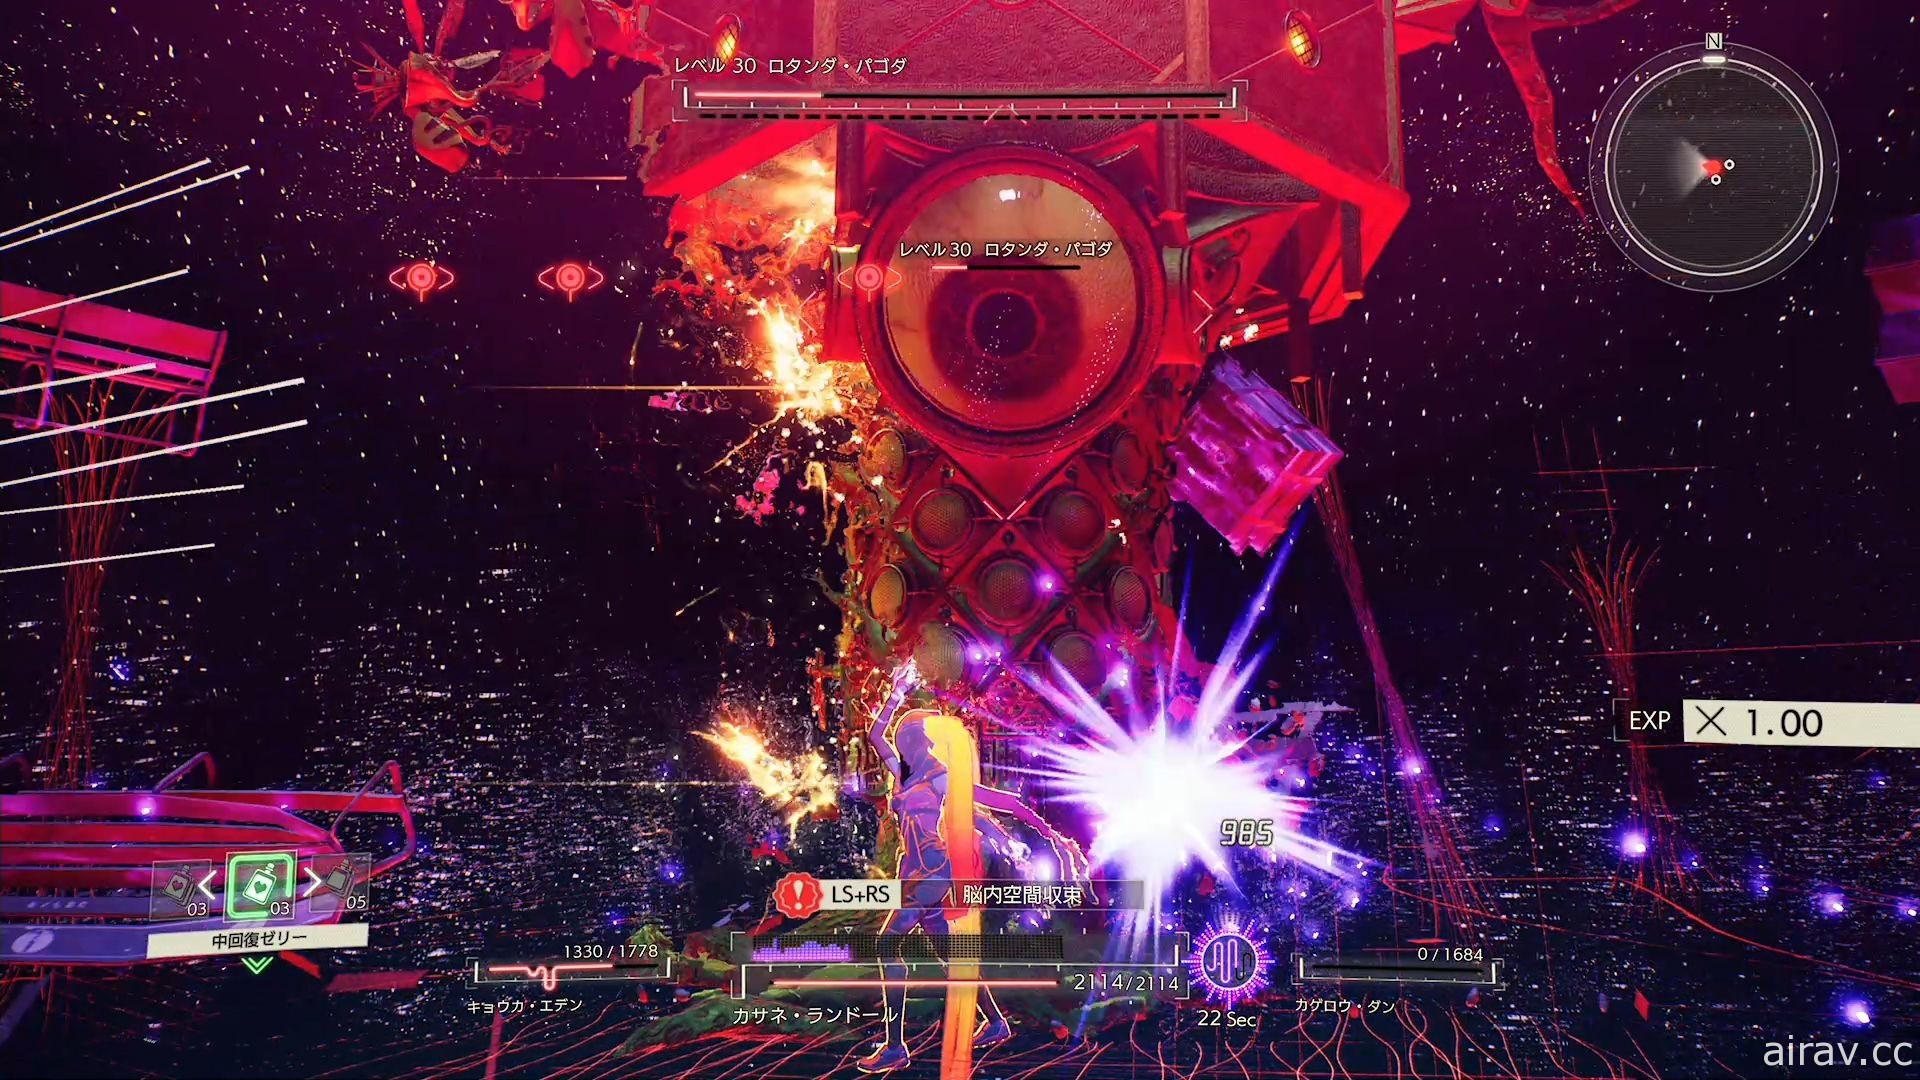 【试玩】《绯红结系》描写超脑力动作、牵绊及情缘的纯正扎实游戏体验